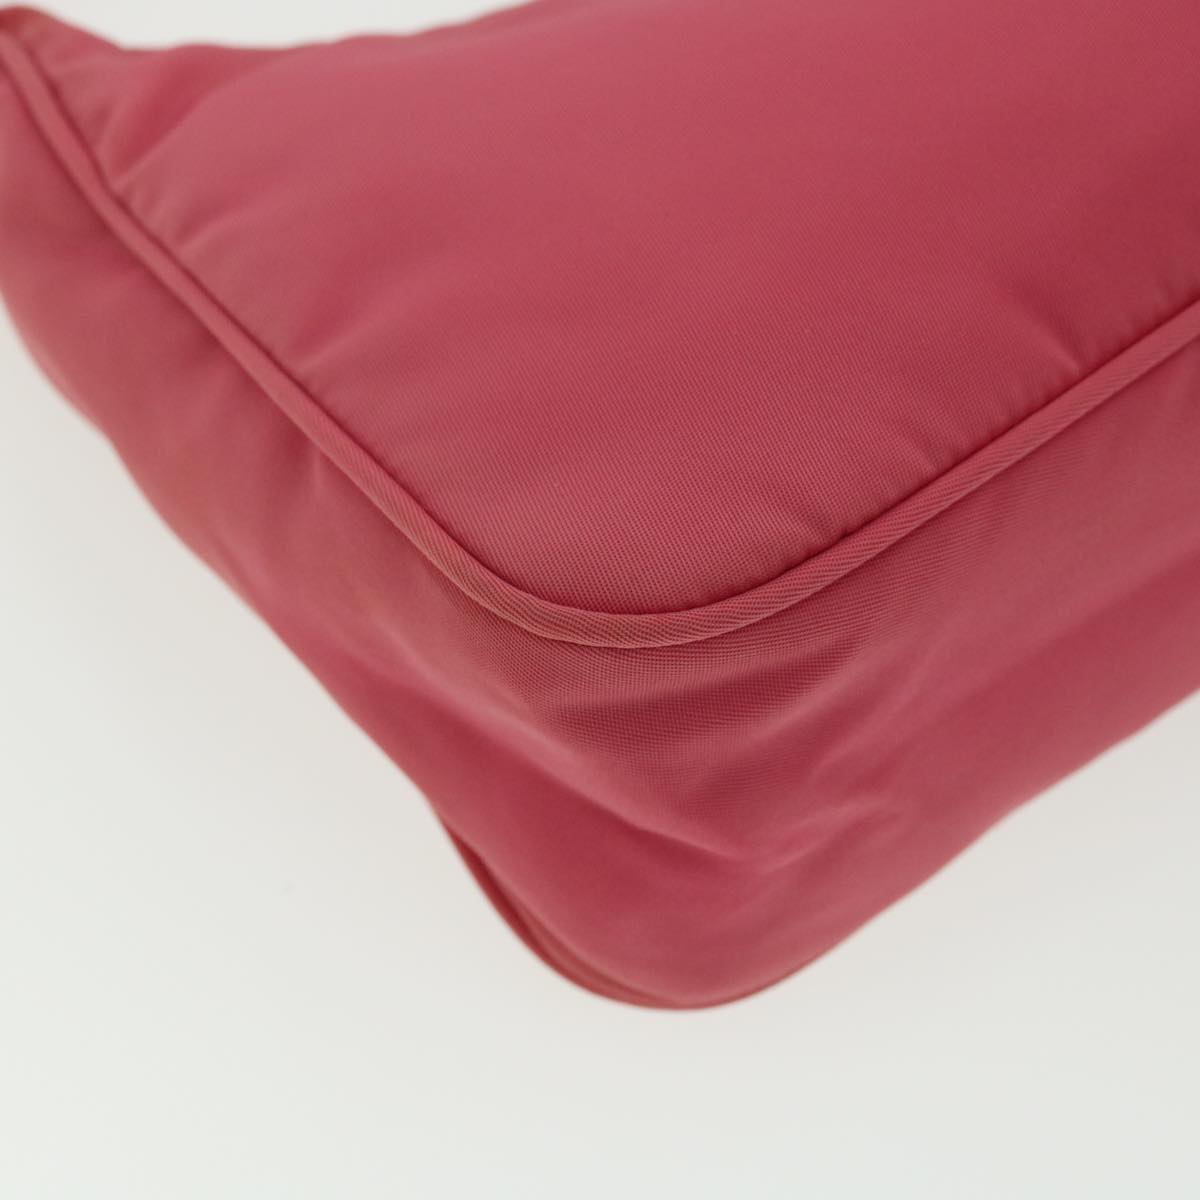 PRADA Hand Bag Nylon Pink Auth yk4950